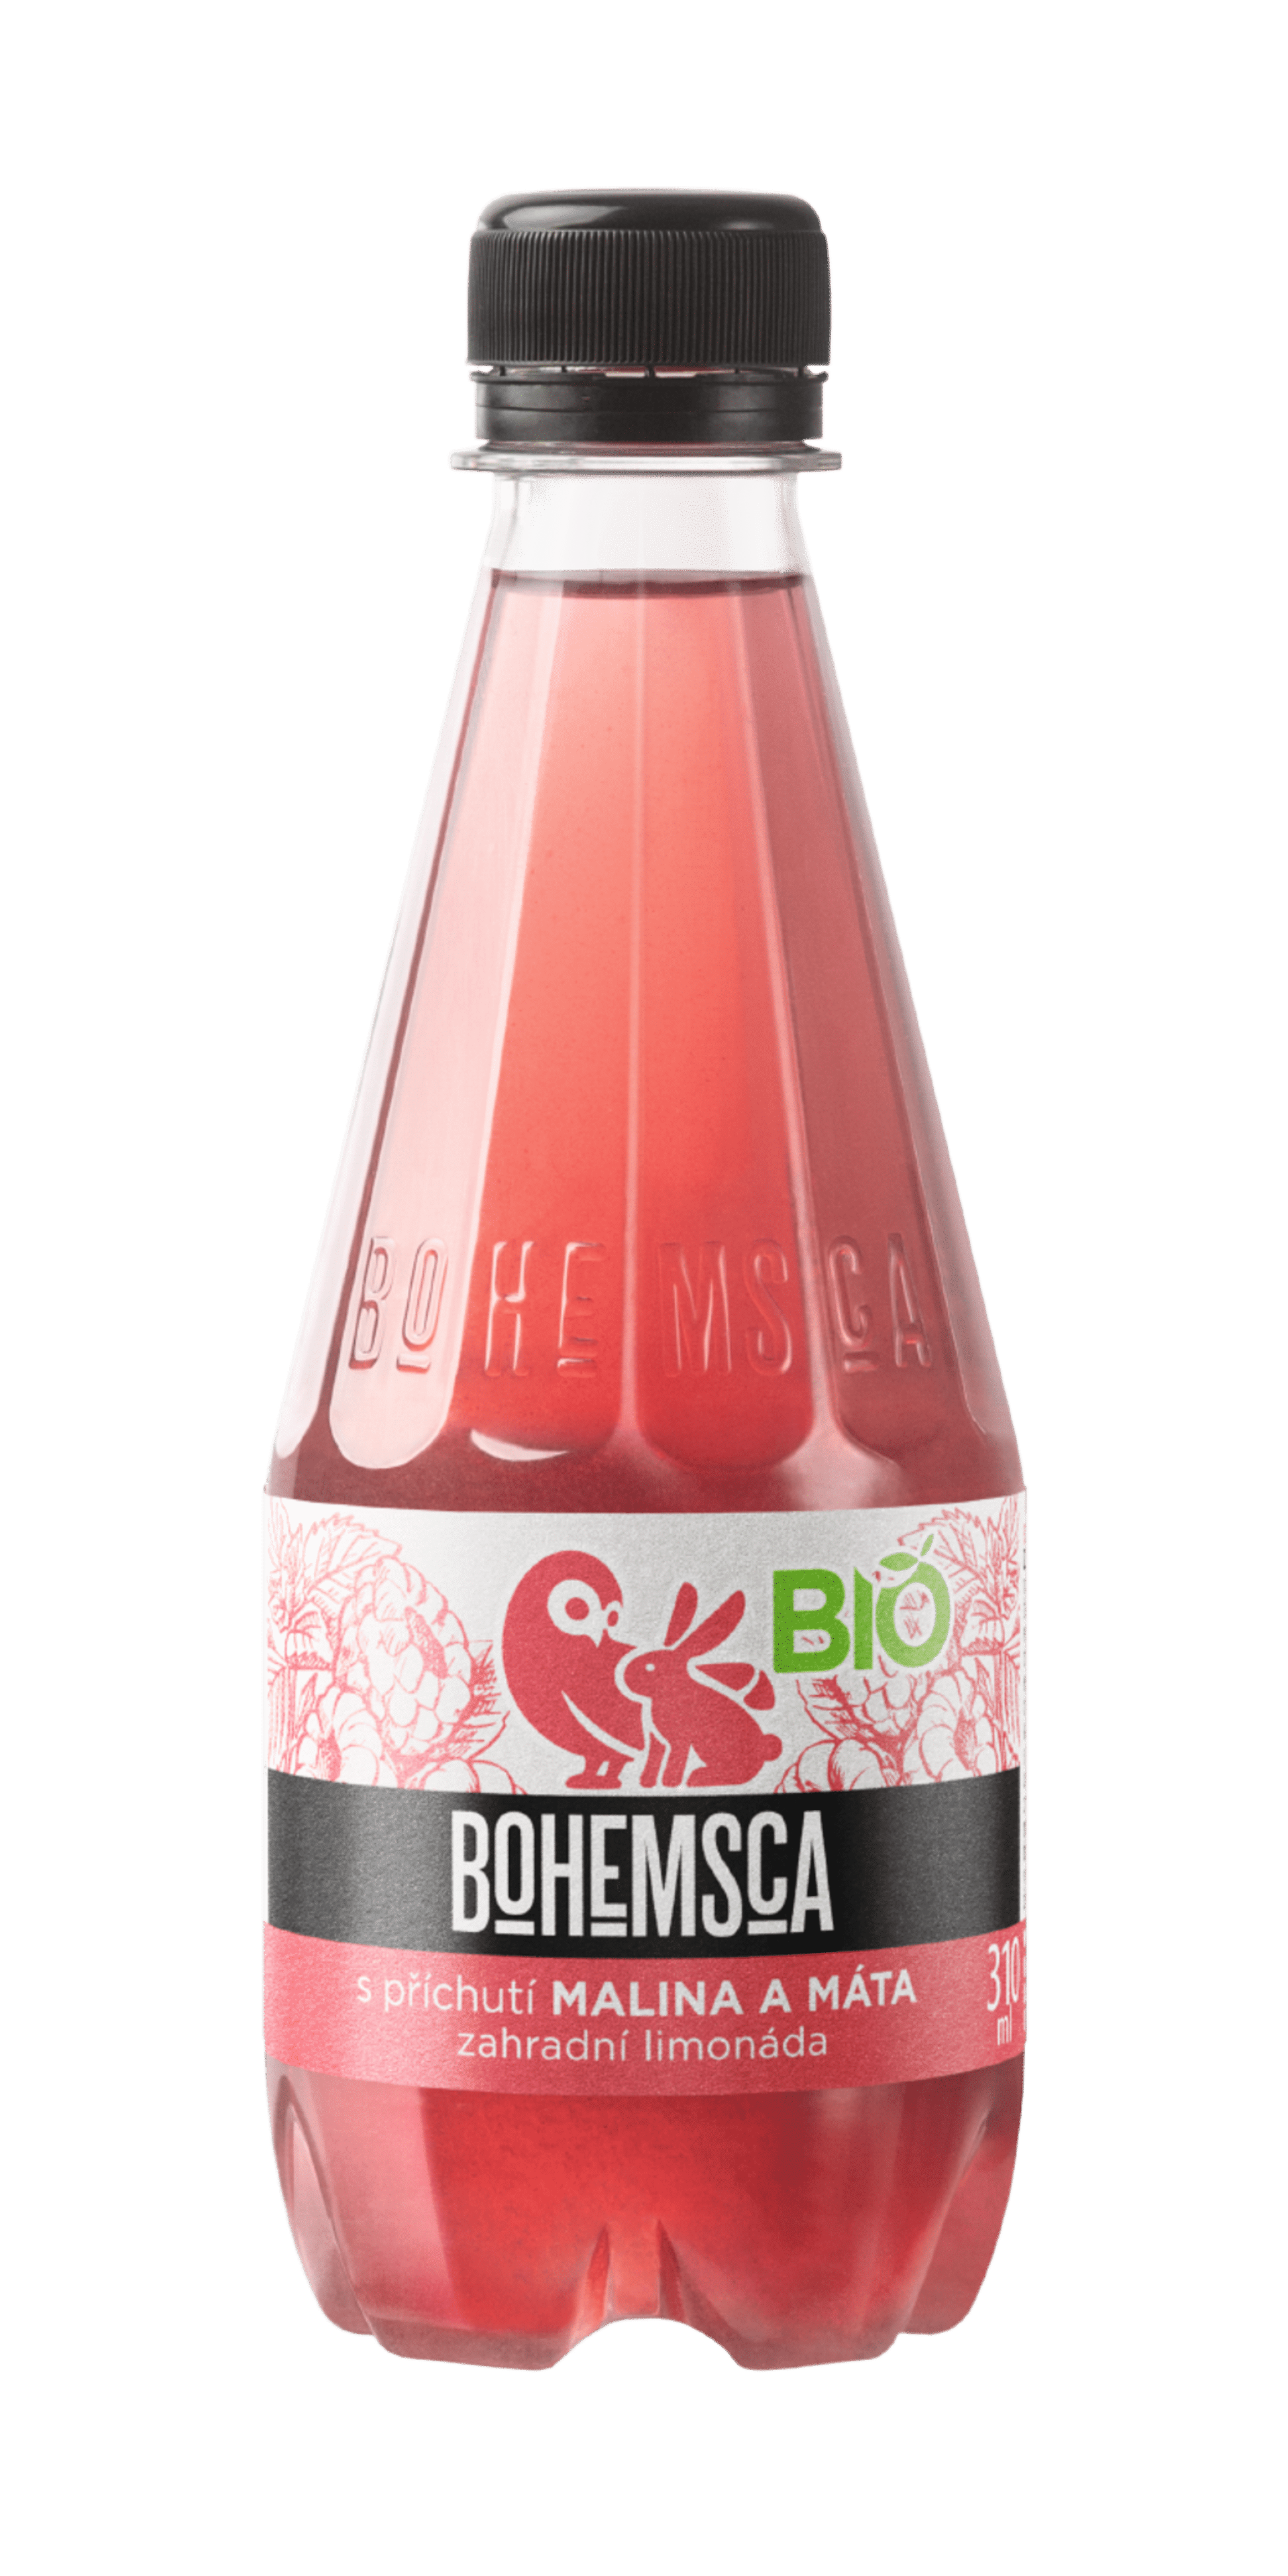 Bohemsca Zahradní limonáda - Malina a Máta BIO pet 310 ml expirace